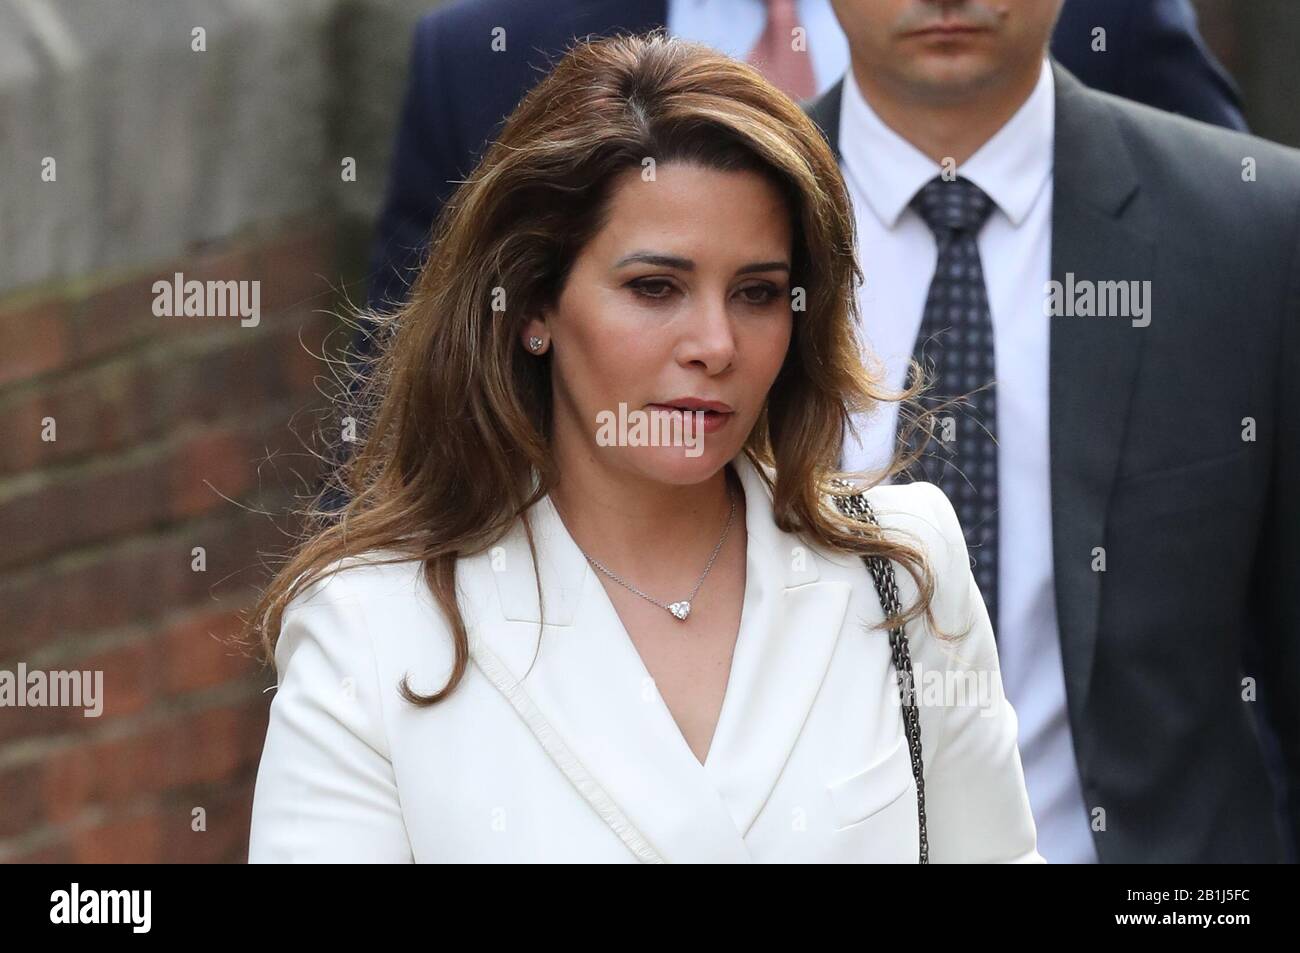 Prinzessin Haya Bint Al Hussein kommt am Eingang des Glockenhofes der Royal Courts of Justice in London an, um die letzte Anhörung in der Schlacht Am High Court zwischen dem Machthaber von Dubai und seiner entfremdeten Frau über ihre Kinder zu erhalten. Stockfoto